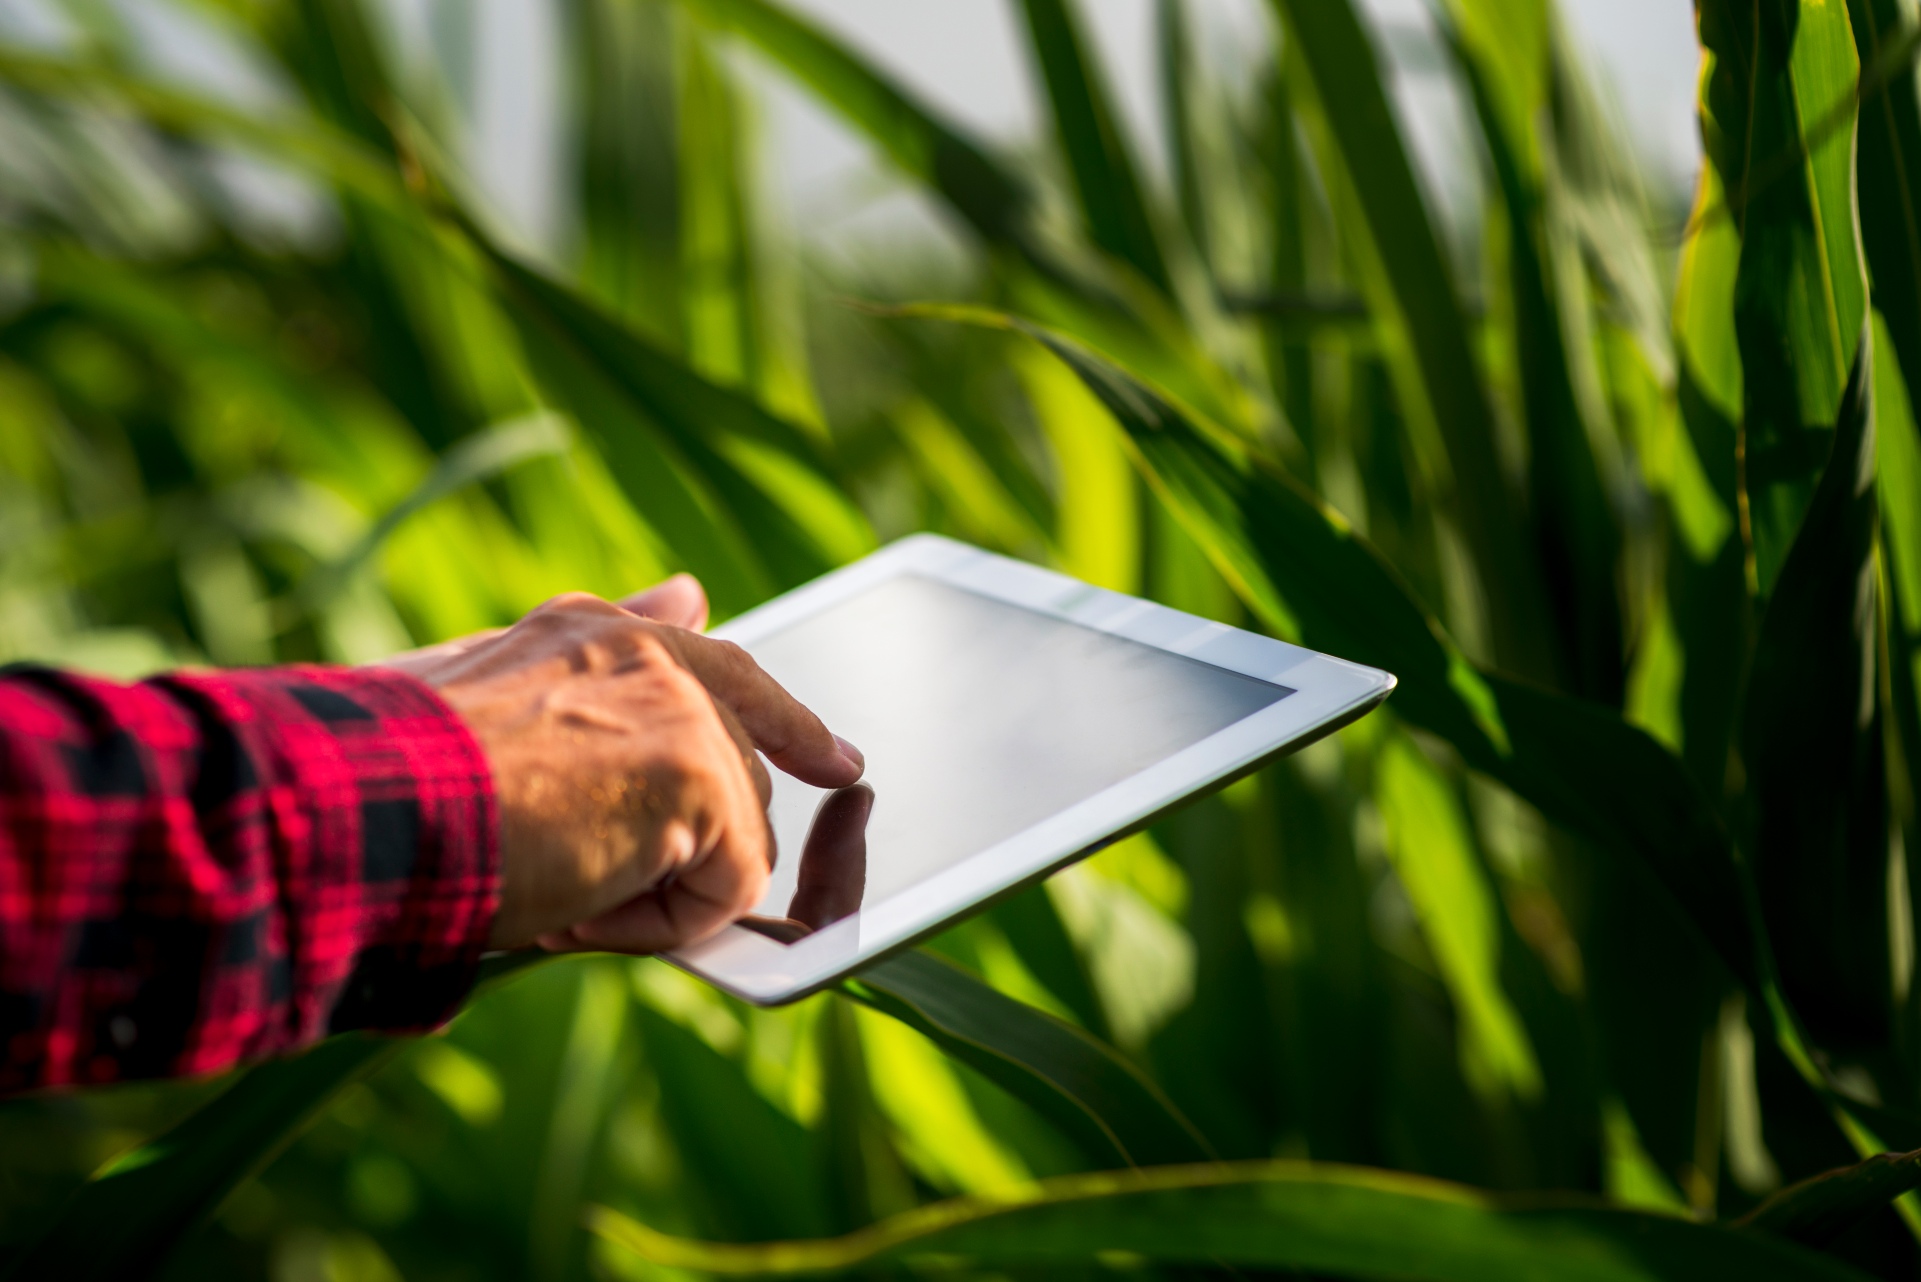 Brasil lidera processo de digitalização no agronegócio, indica pesquisa